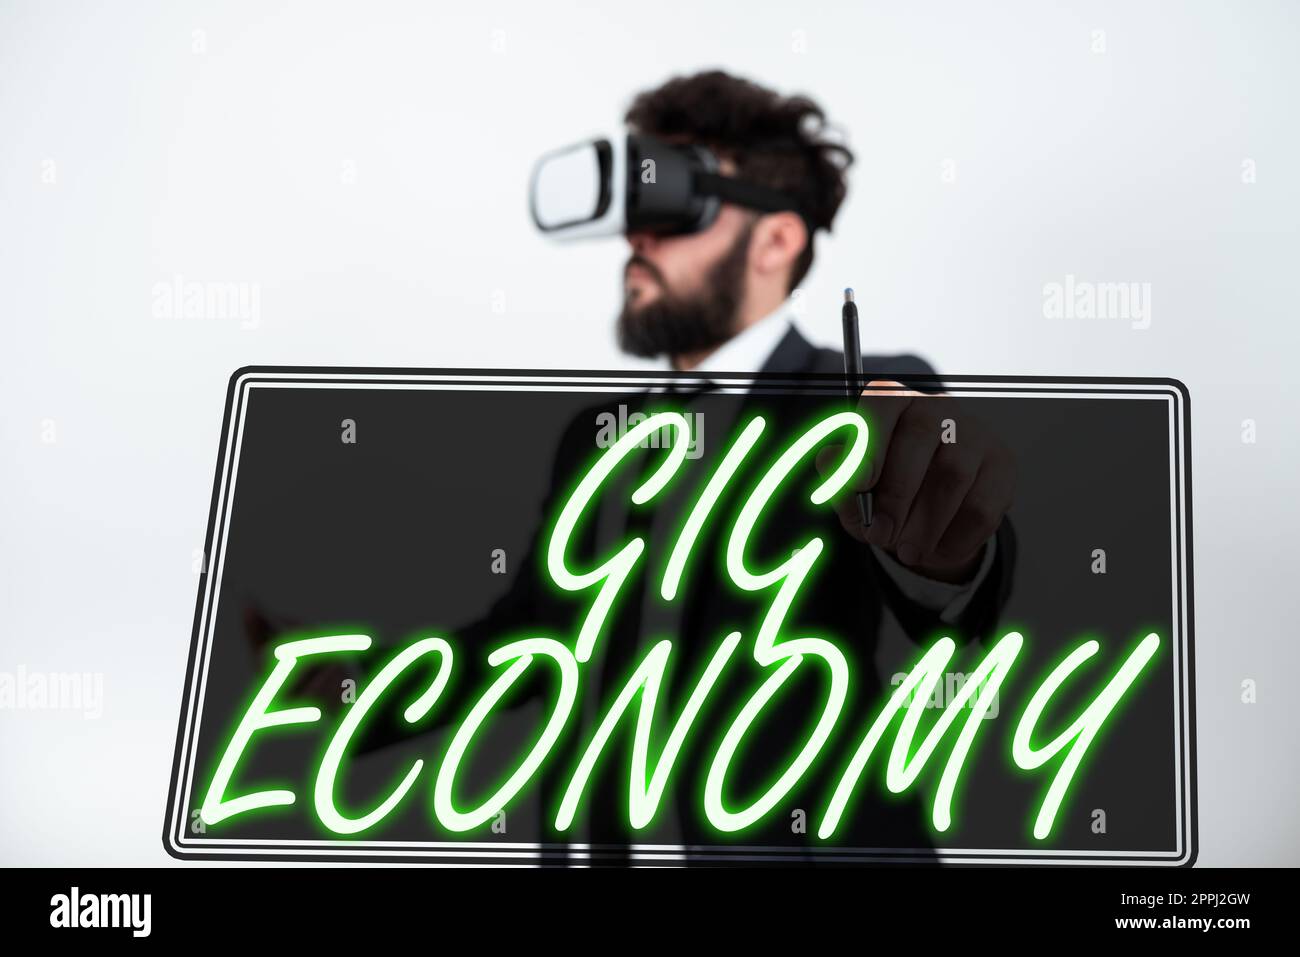 Textschild mit Anzeige von Gig Economy. Konzeptfoto ein Marktsystem, das sich durch kurzfristige Arbeitsplätze und Verträge auszeichnet Stockfoto